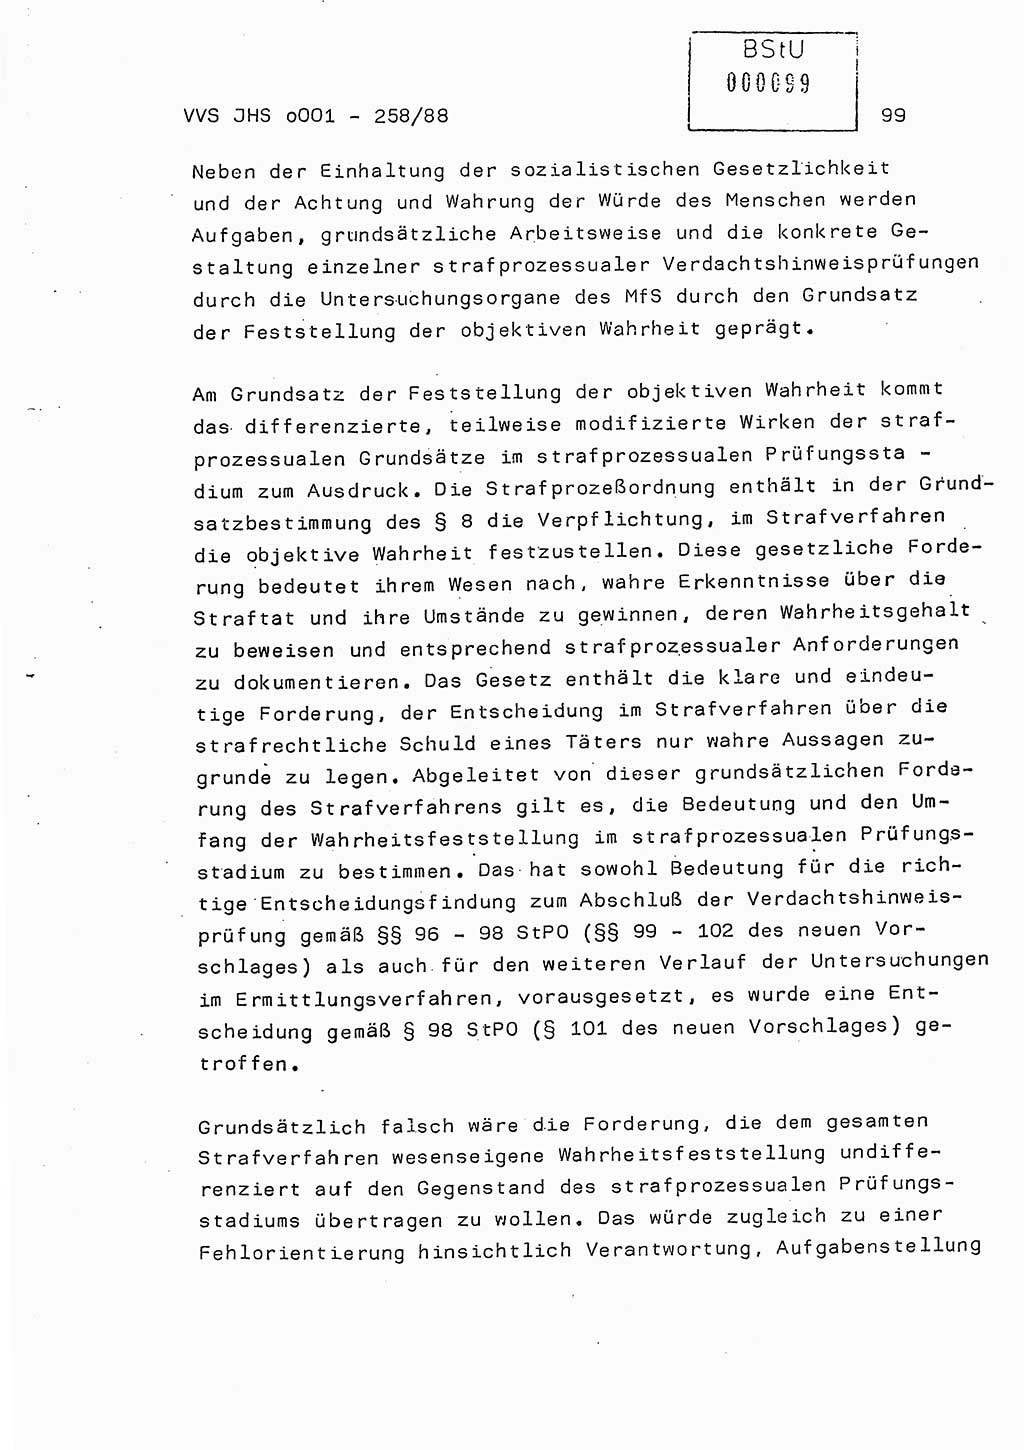 Dissertation, Oberleutnant Uwe Kärsten (JHS), Hauptmann Dr. Joachim Henkel (JHS), Oberstleutnant Werner Mählitz (Leiter der Abt. Ⅸ BV Rostock), Oberstleutnant Jürgen Tröge (HA Ⅸ/AKG), Oberstleutnant Winfried Ziegler (HA Ⅸ/9), Major Wolf-Rüdiger Wurzler (JHS), Ministerium für Staatssicherheit (MfS) [Deutsche Demokratische Republik (DDR)], Juristische Hochschule (JHS), Vertrauliche Verschlußsache (VVS) o001-258/88, Potsdam 1988, Seite 99 (Diss. MfS DDR JHS VVS o001-258/88 1988, S. 99)